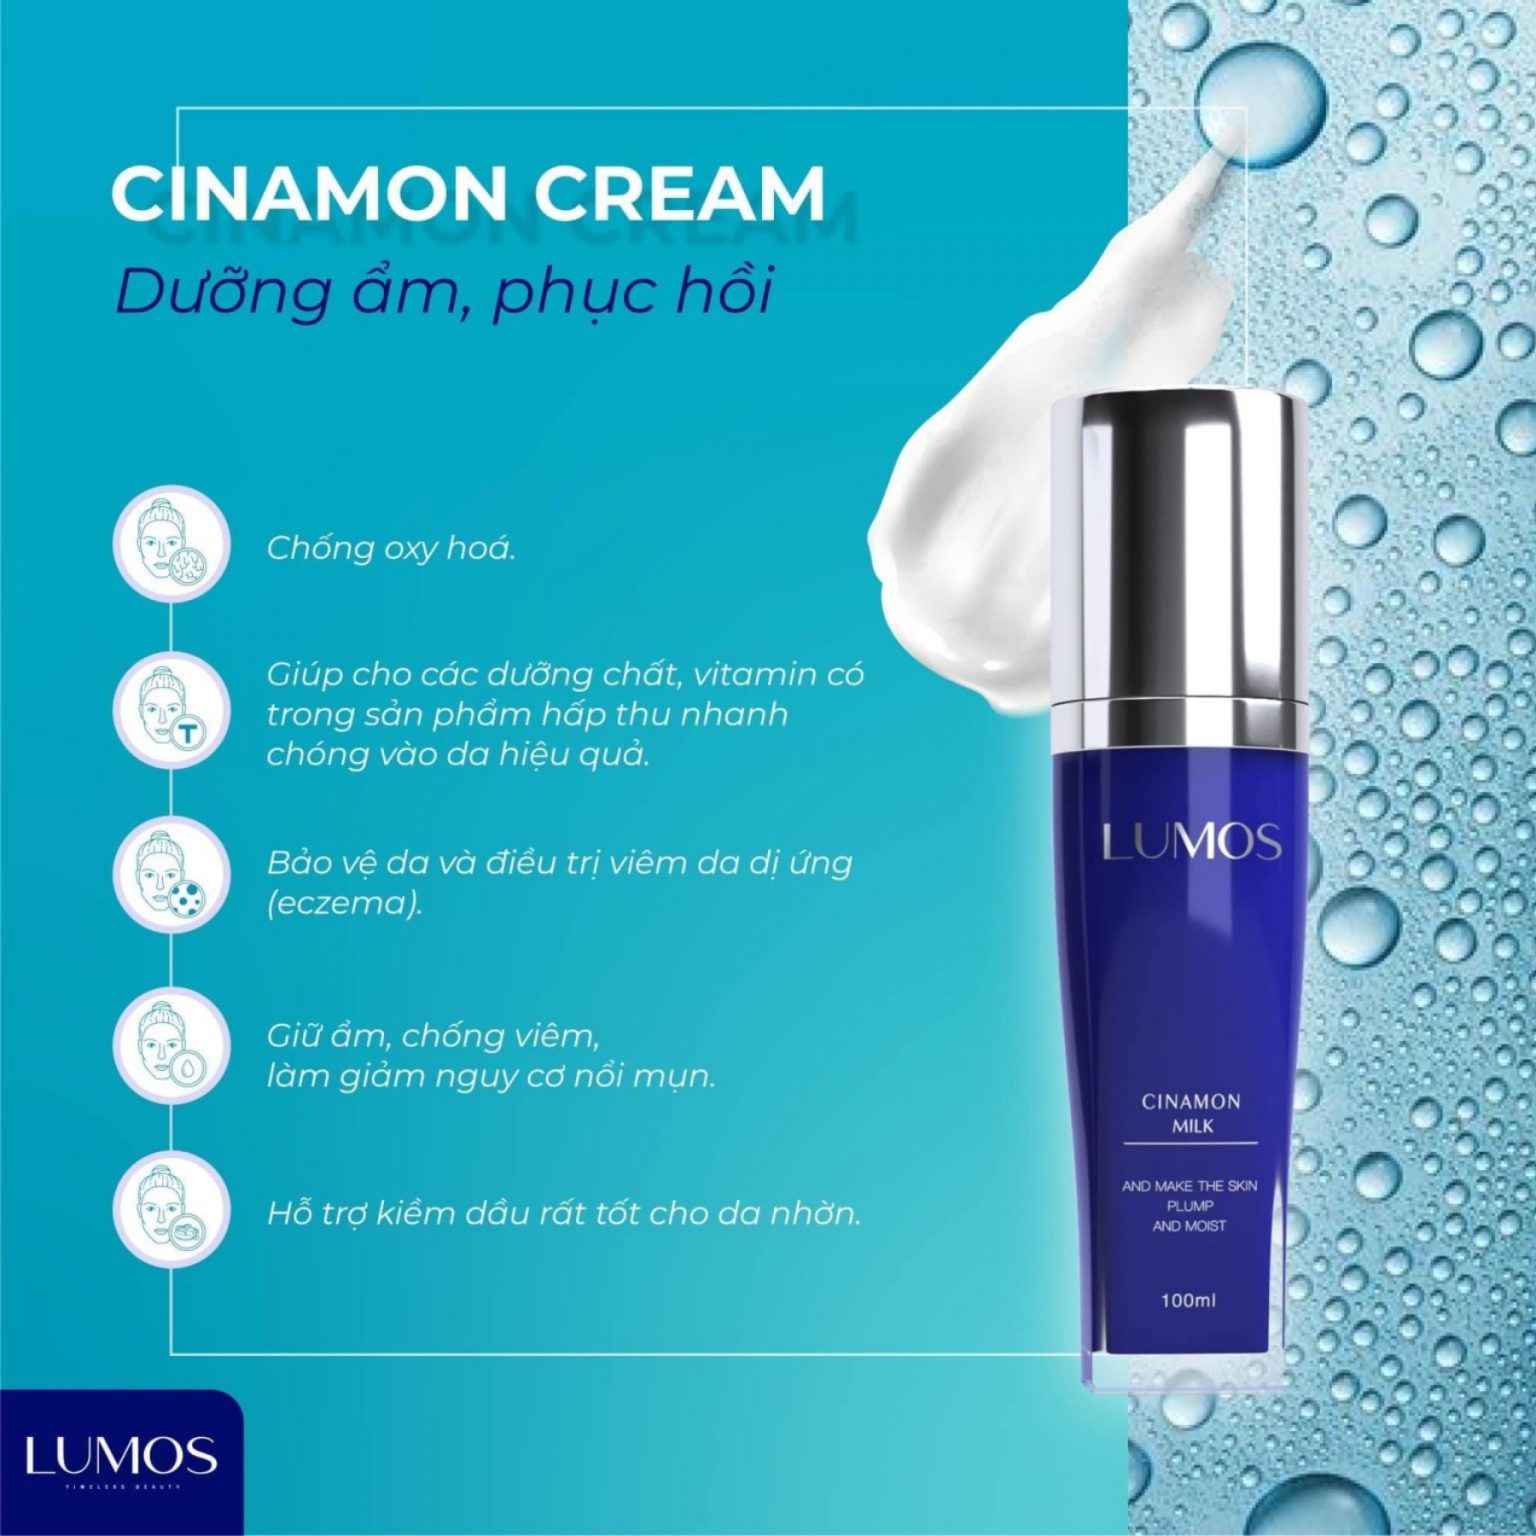 Lumos Cinamon Cream Phép Màu Đến Từ Vùng Hương Cảng